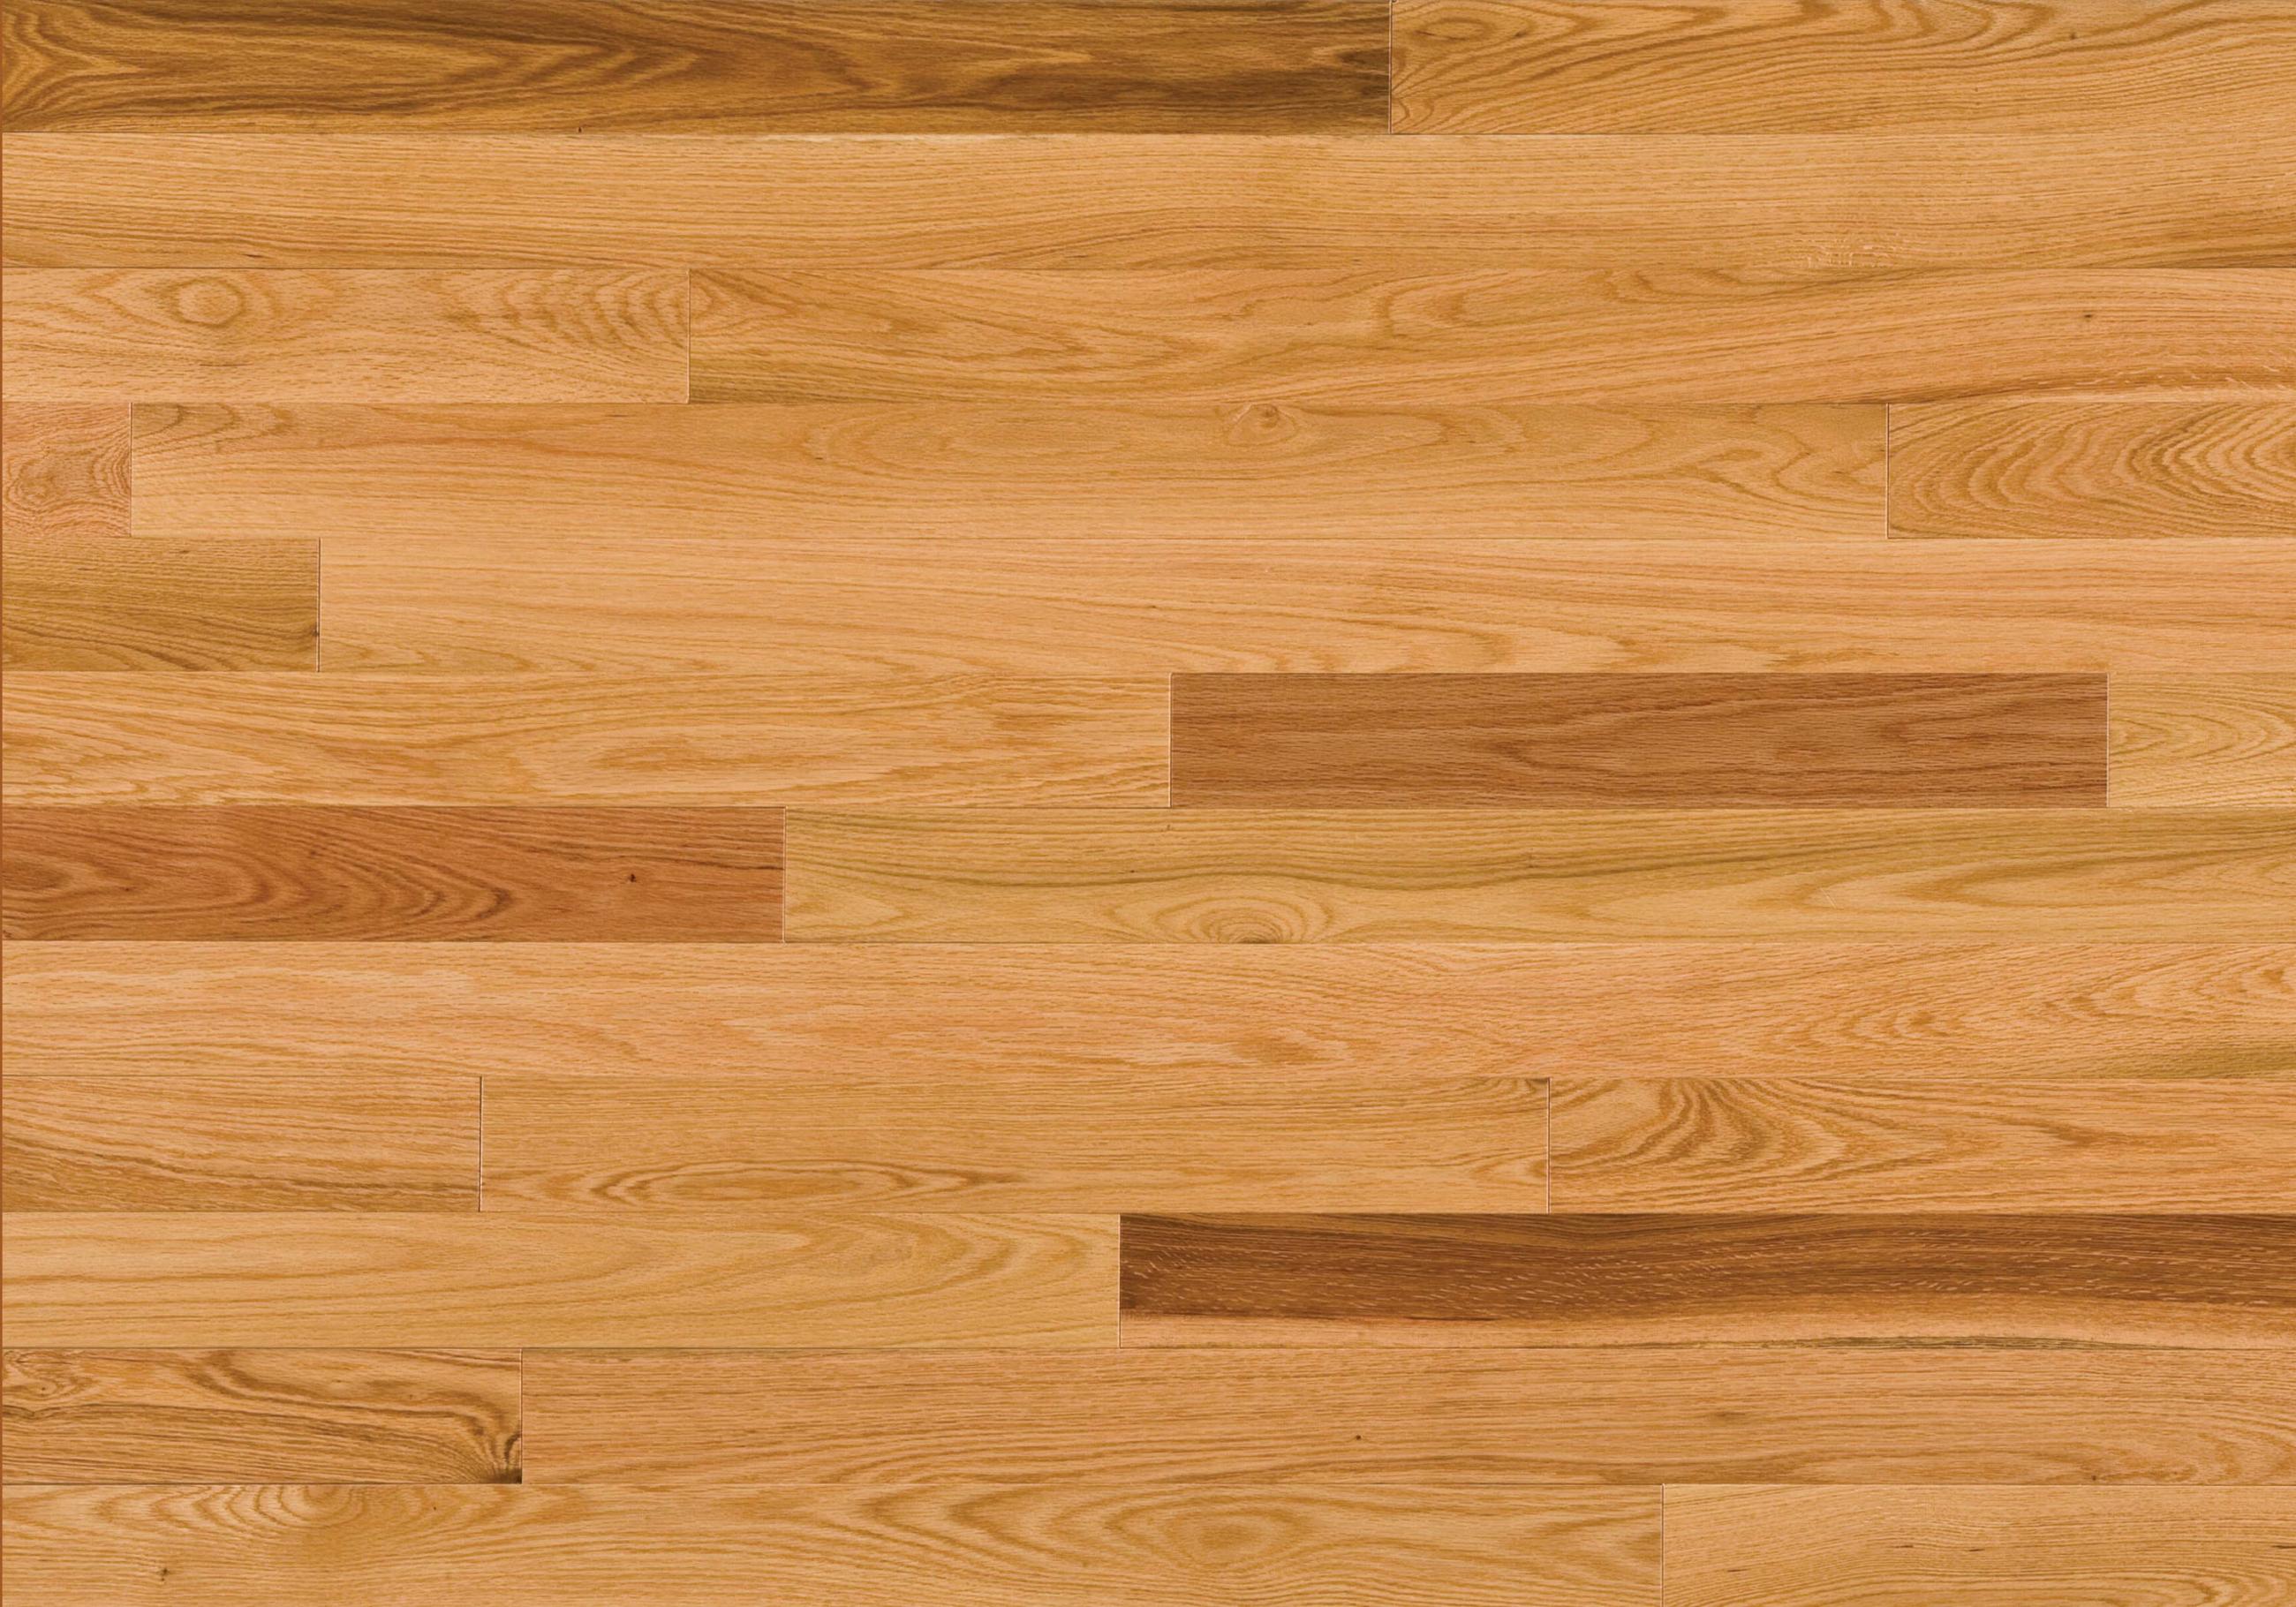 20 Images Hardwood Floor Texture